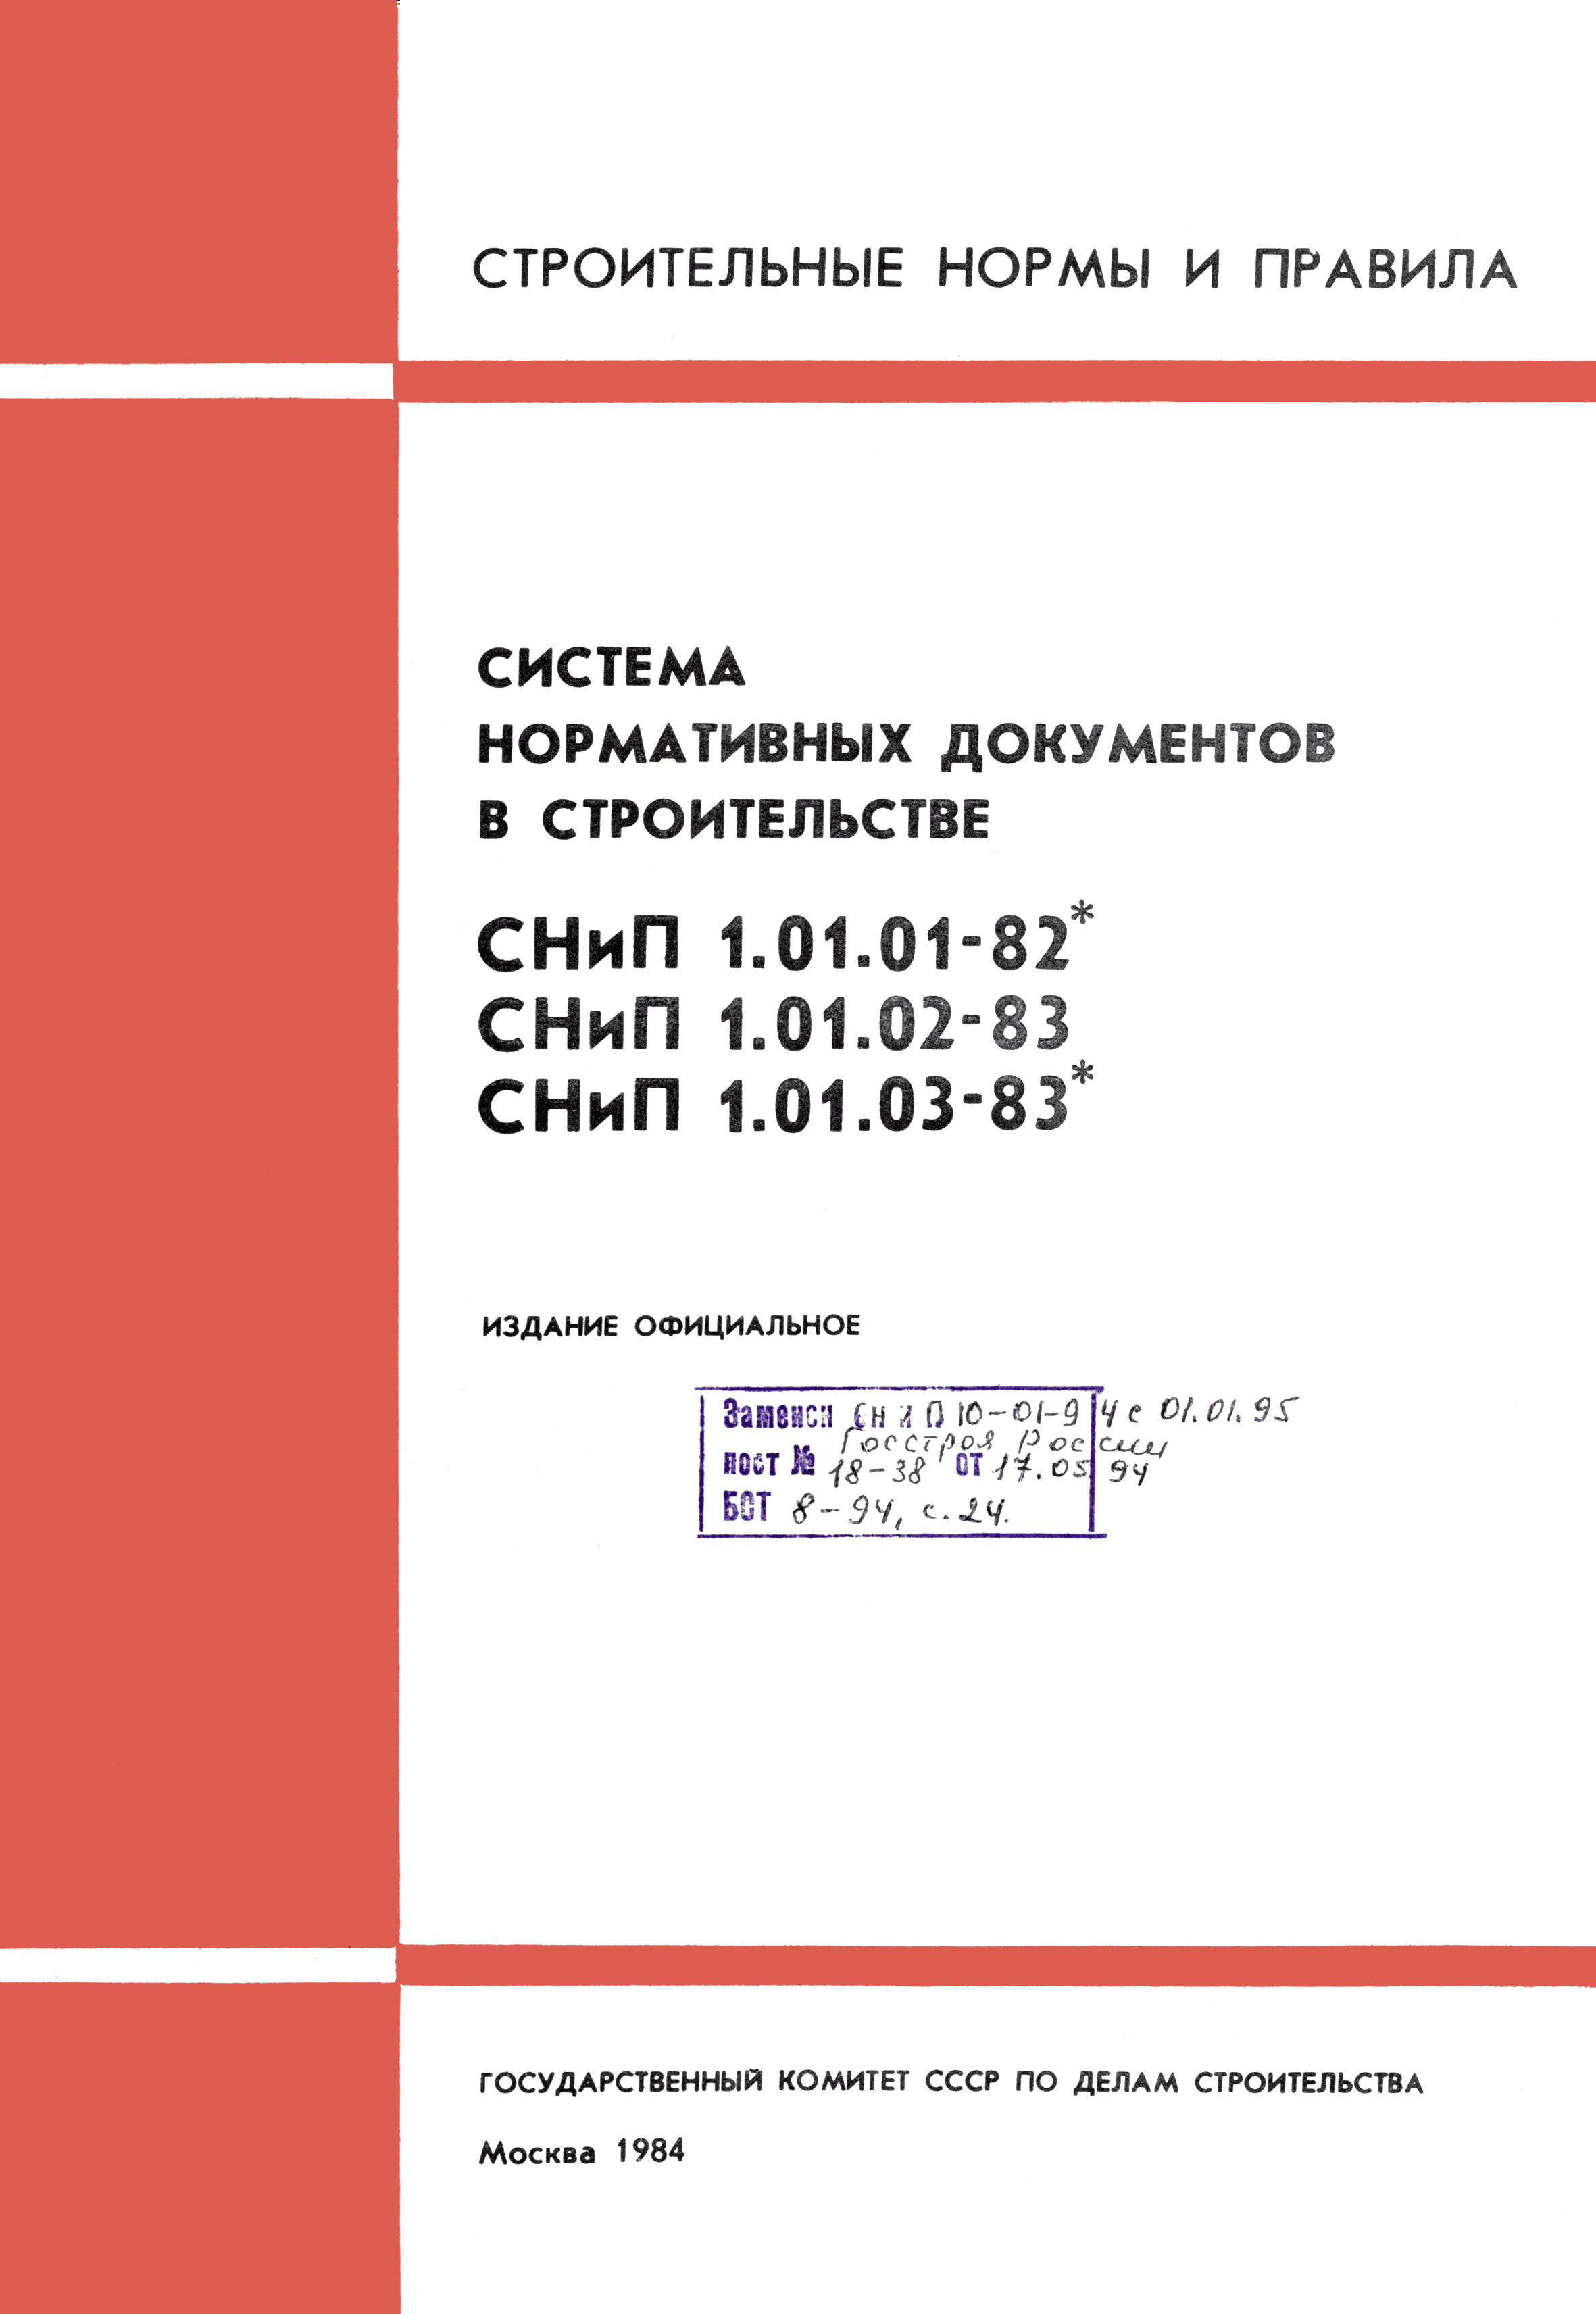 СНиП 1.01.03-83*